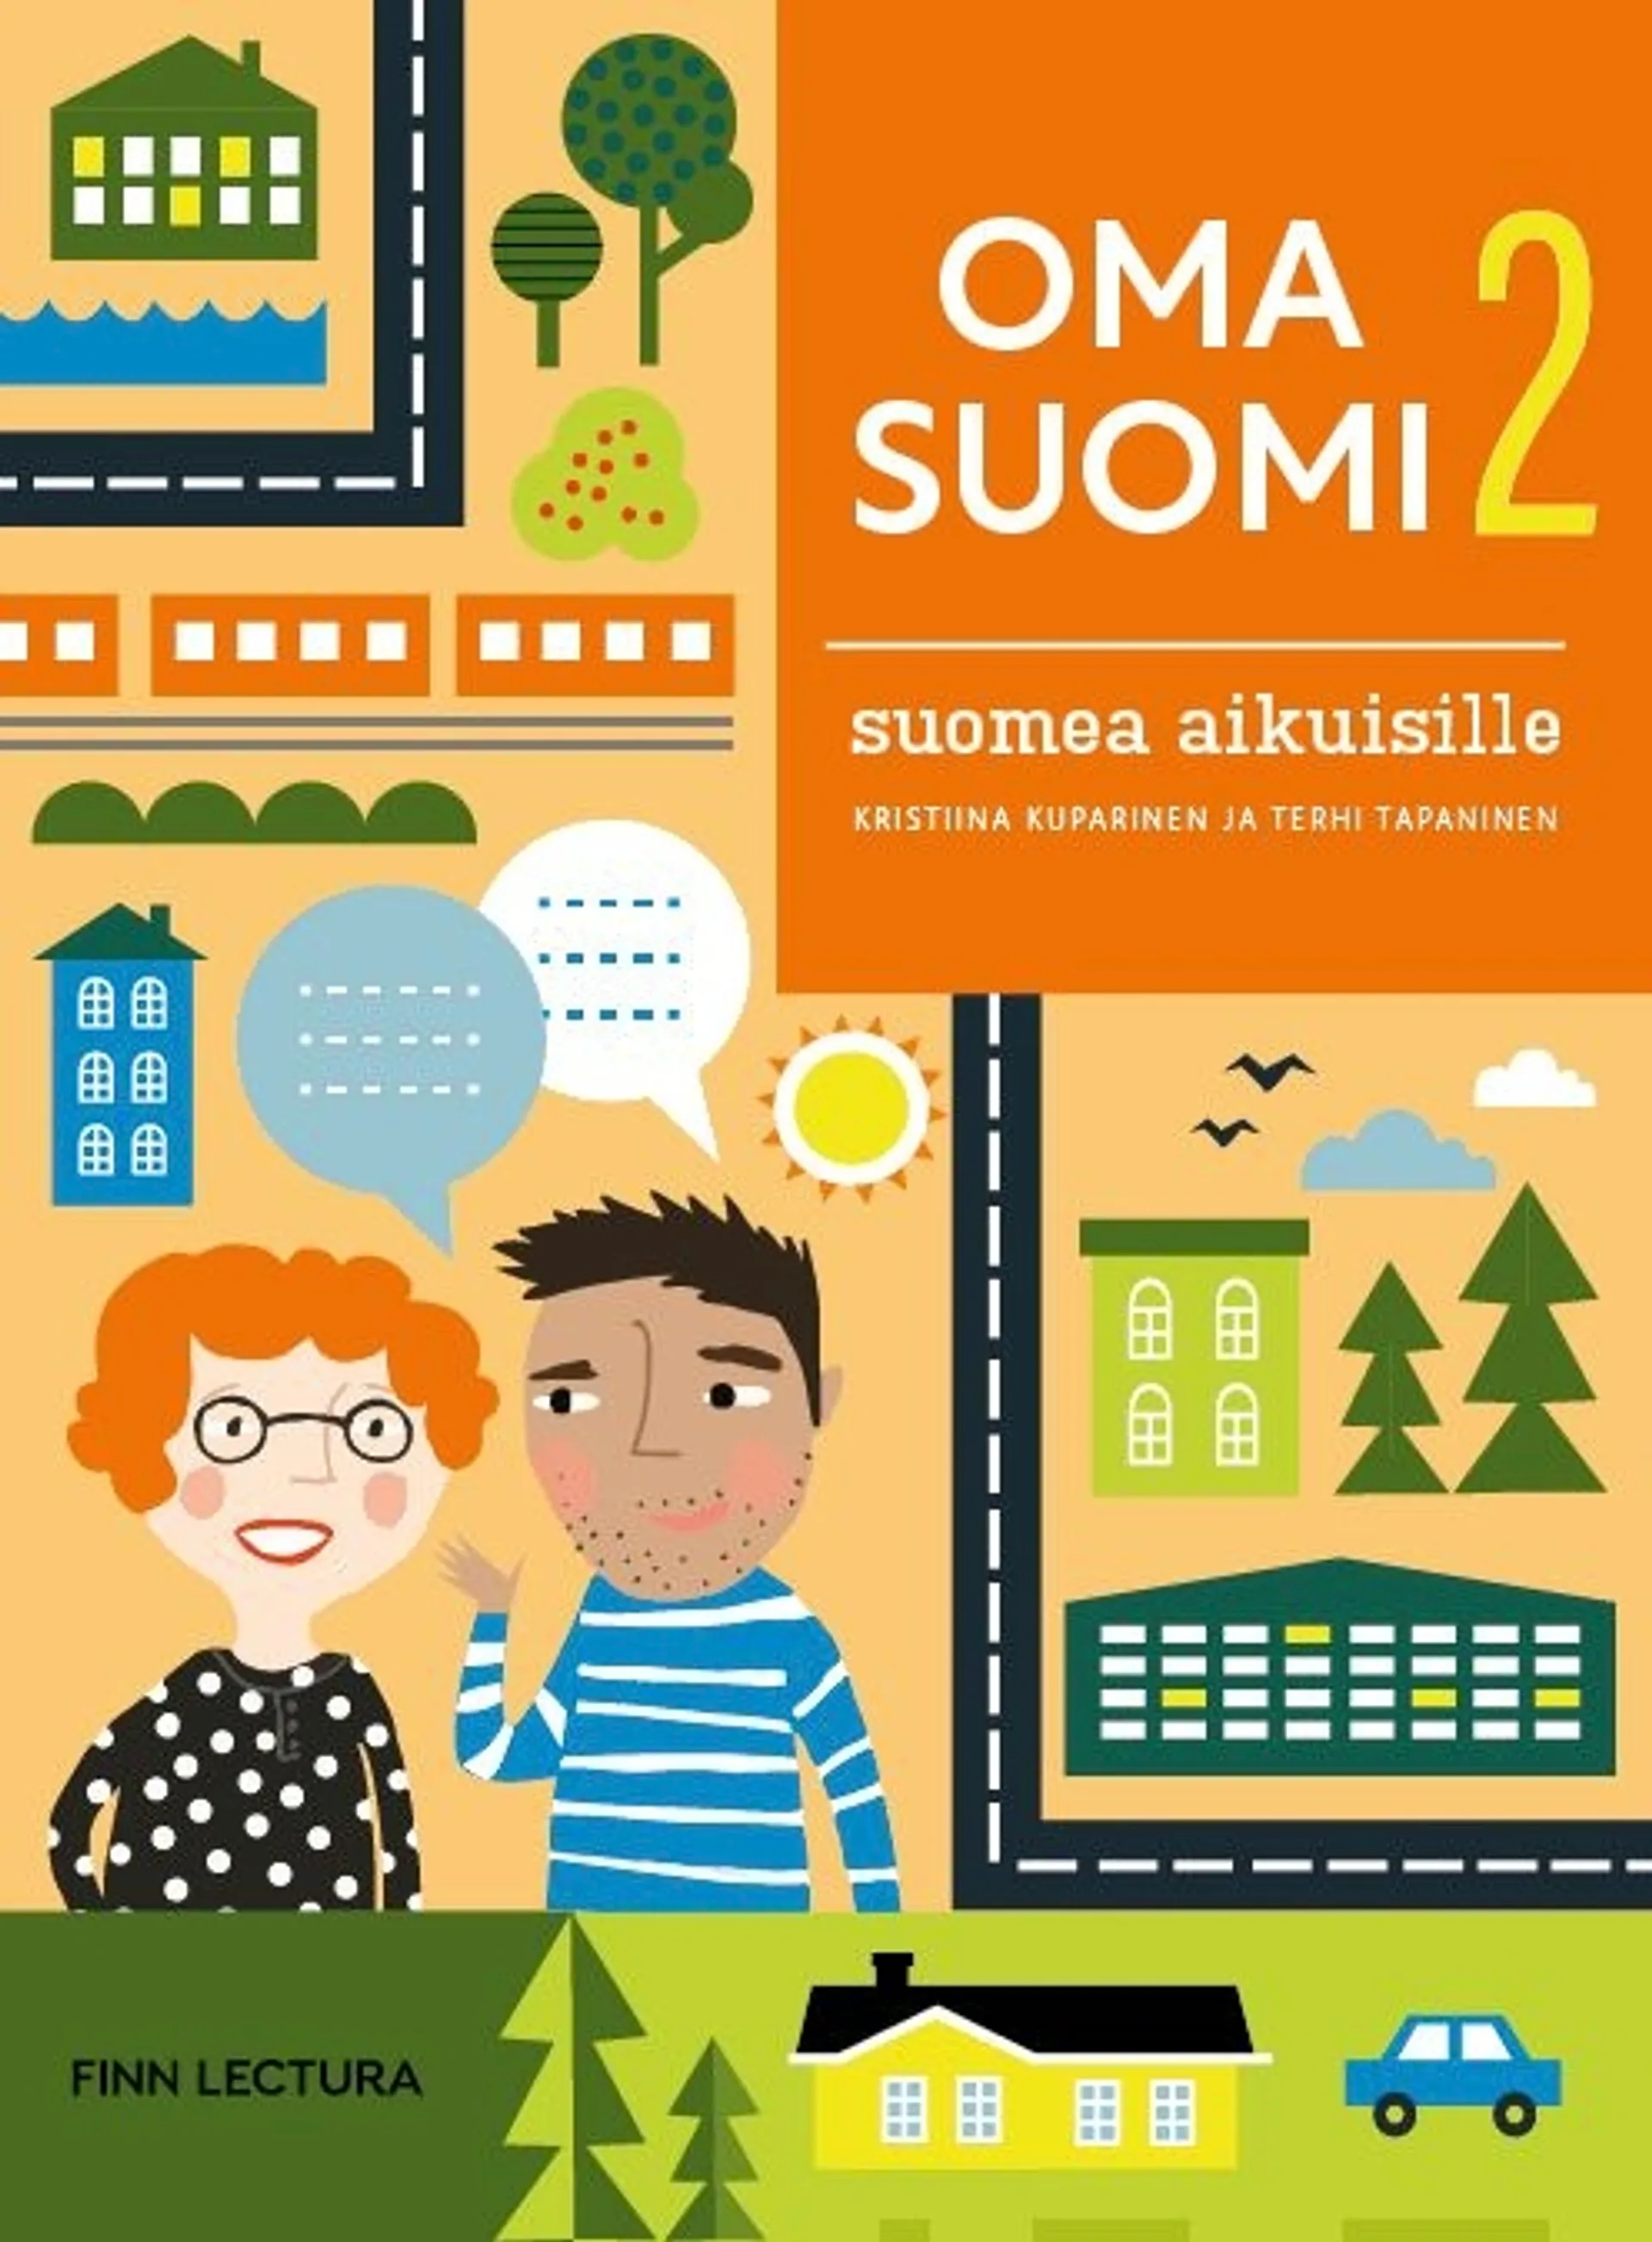 Kuparinen, Oma suomi 2 Uudistettu - Suomea aikuisille